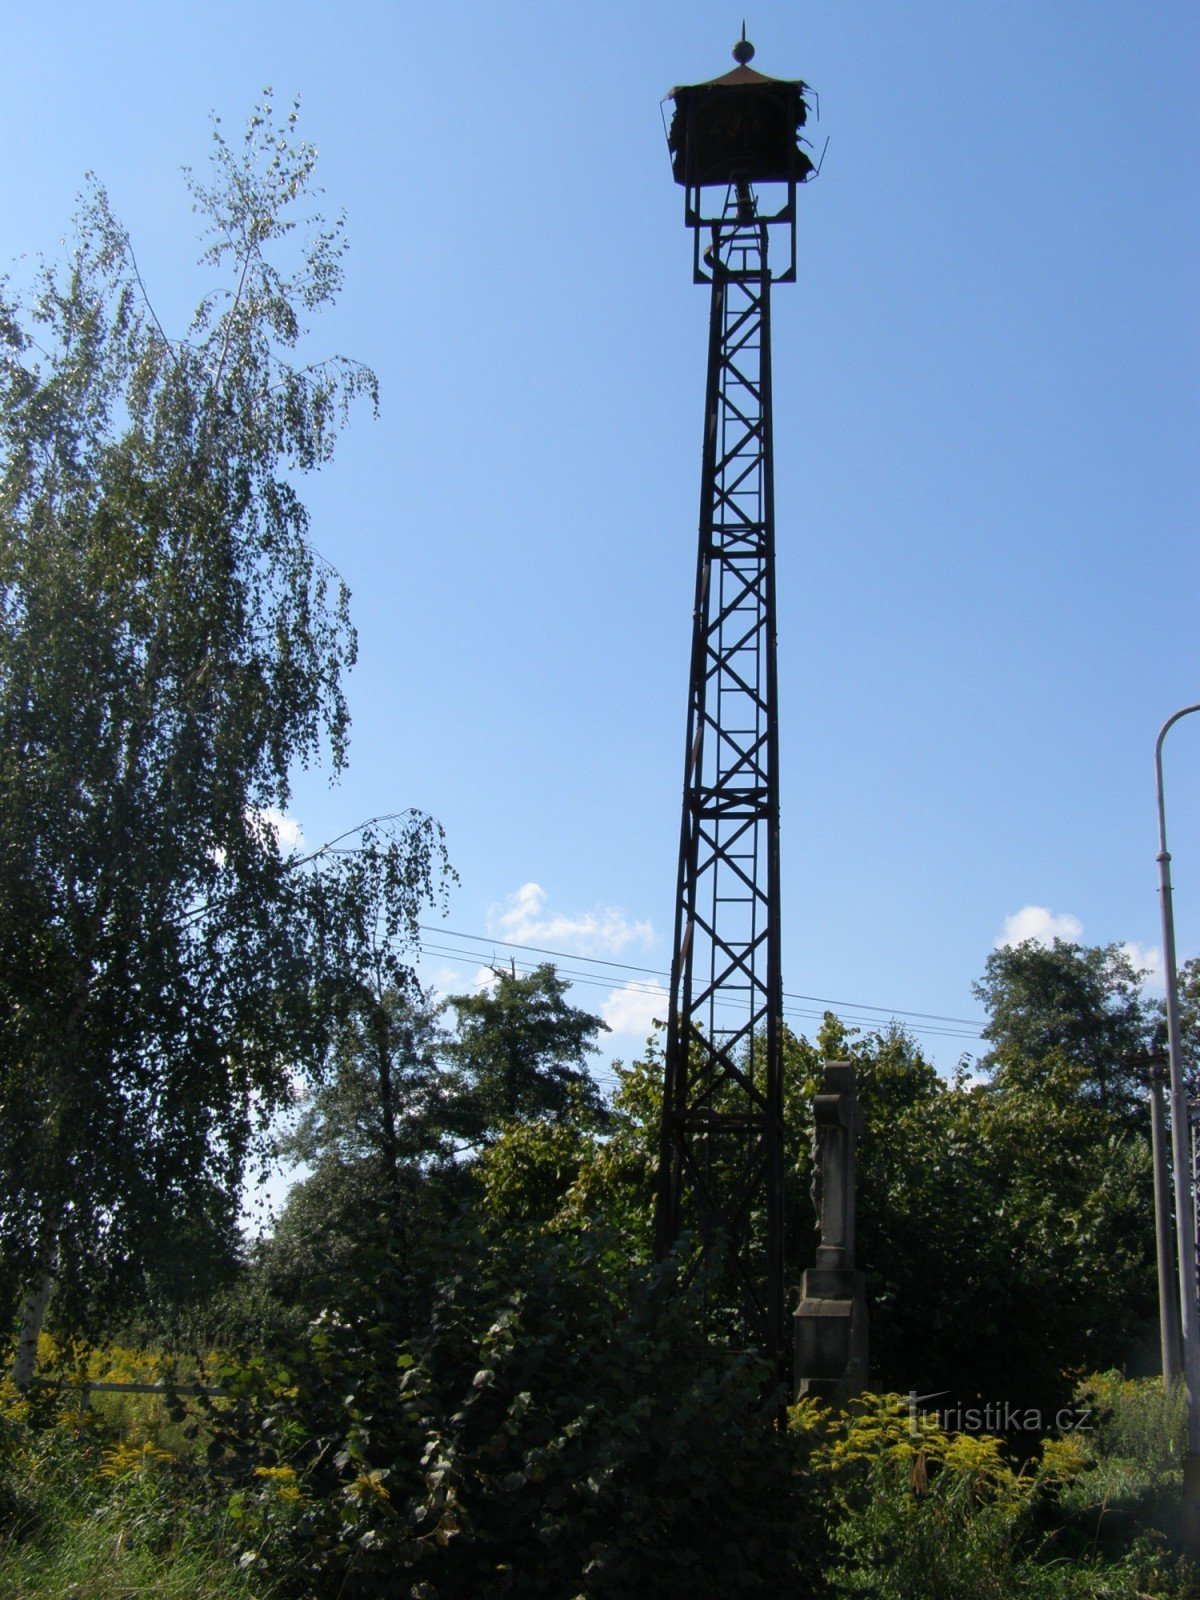 Hradec Králové - đài kỷ niệm đóng đinh với tháp chuông ở ngoại ô Silesian